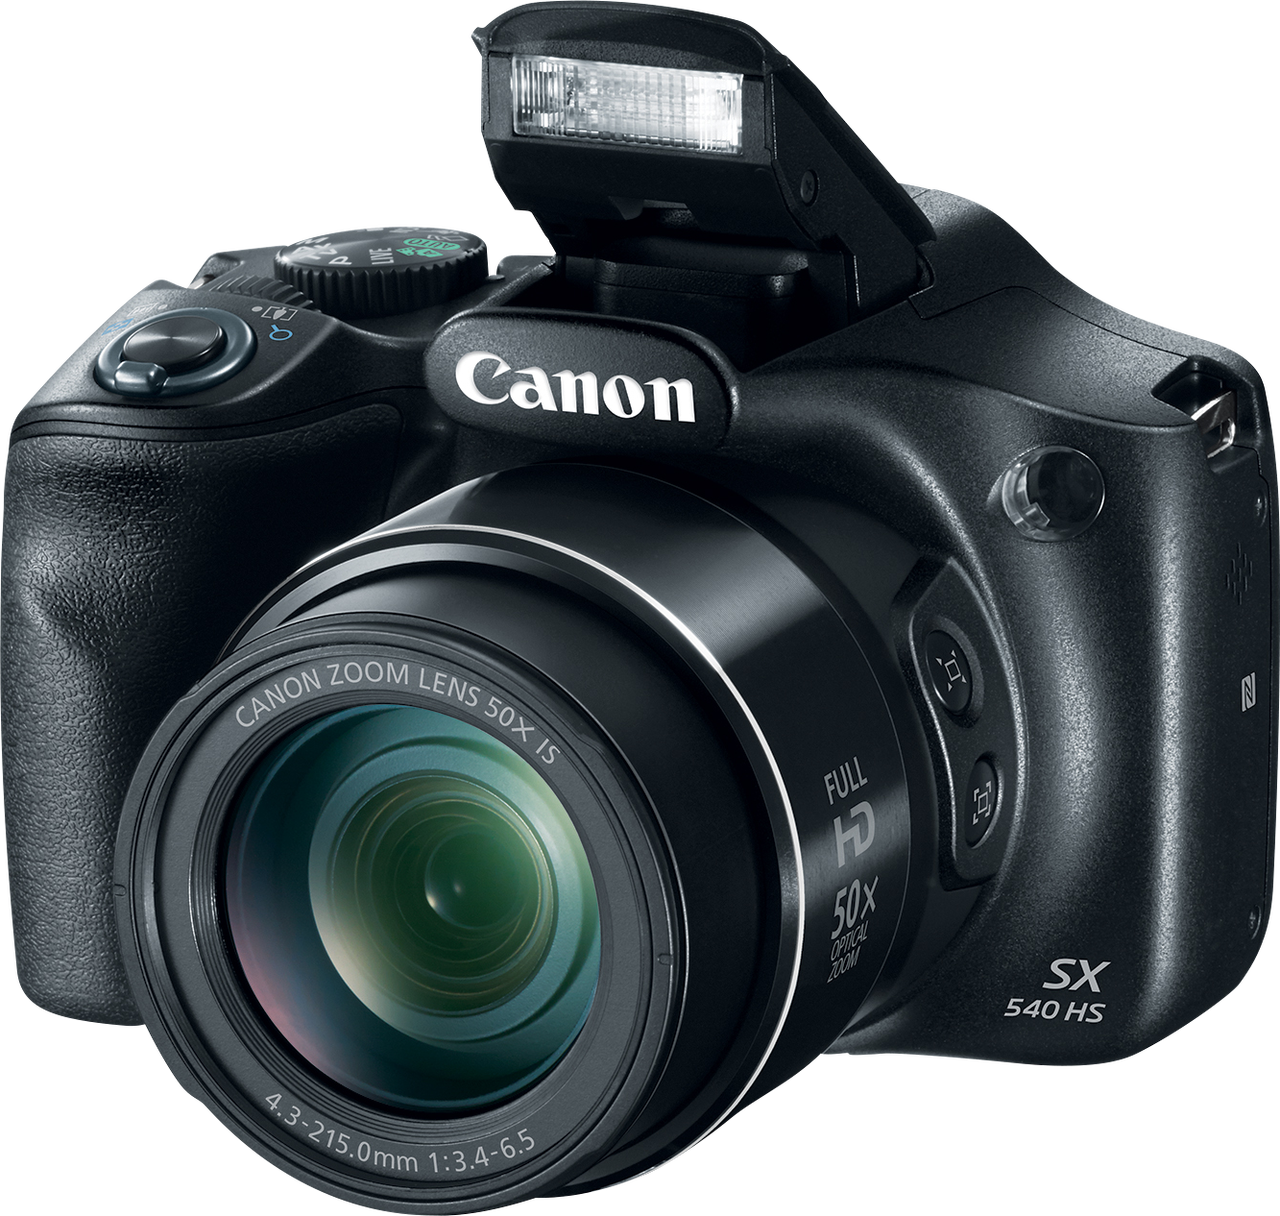 Canon PowerShot SX540 HS posiada również dedykowany przycisk Wi-Fi